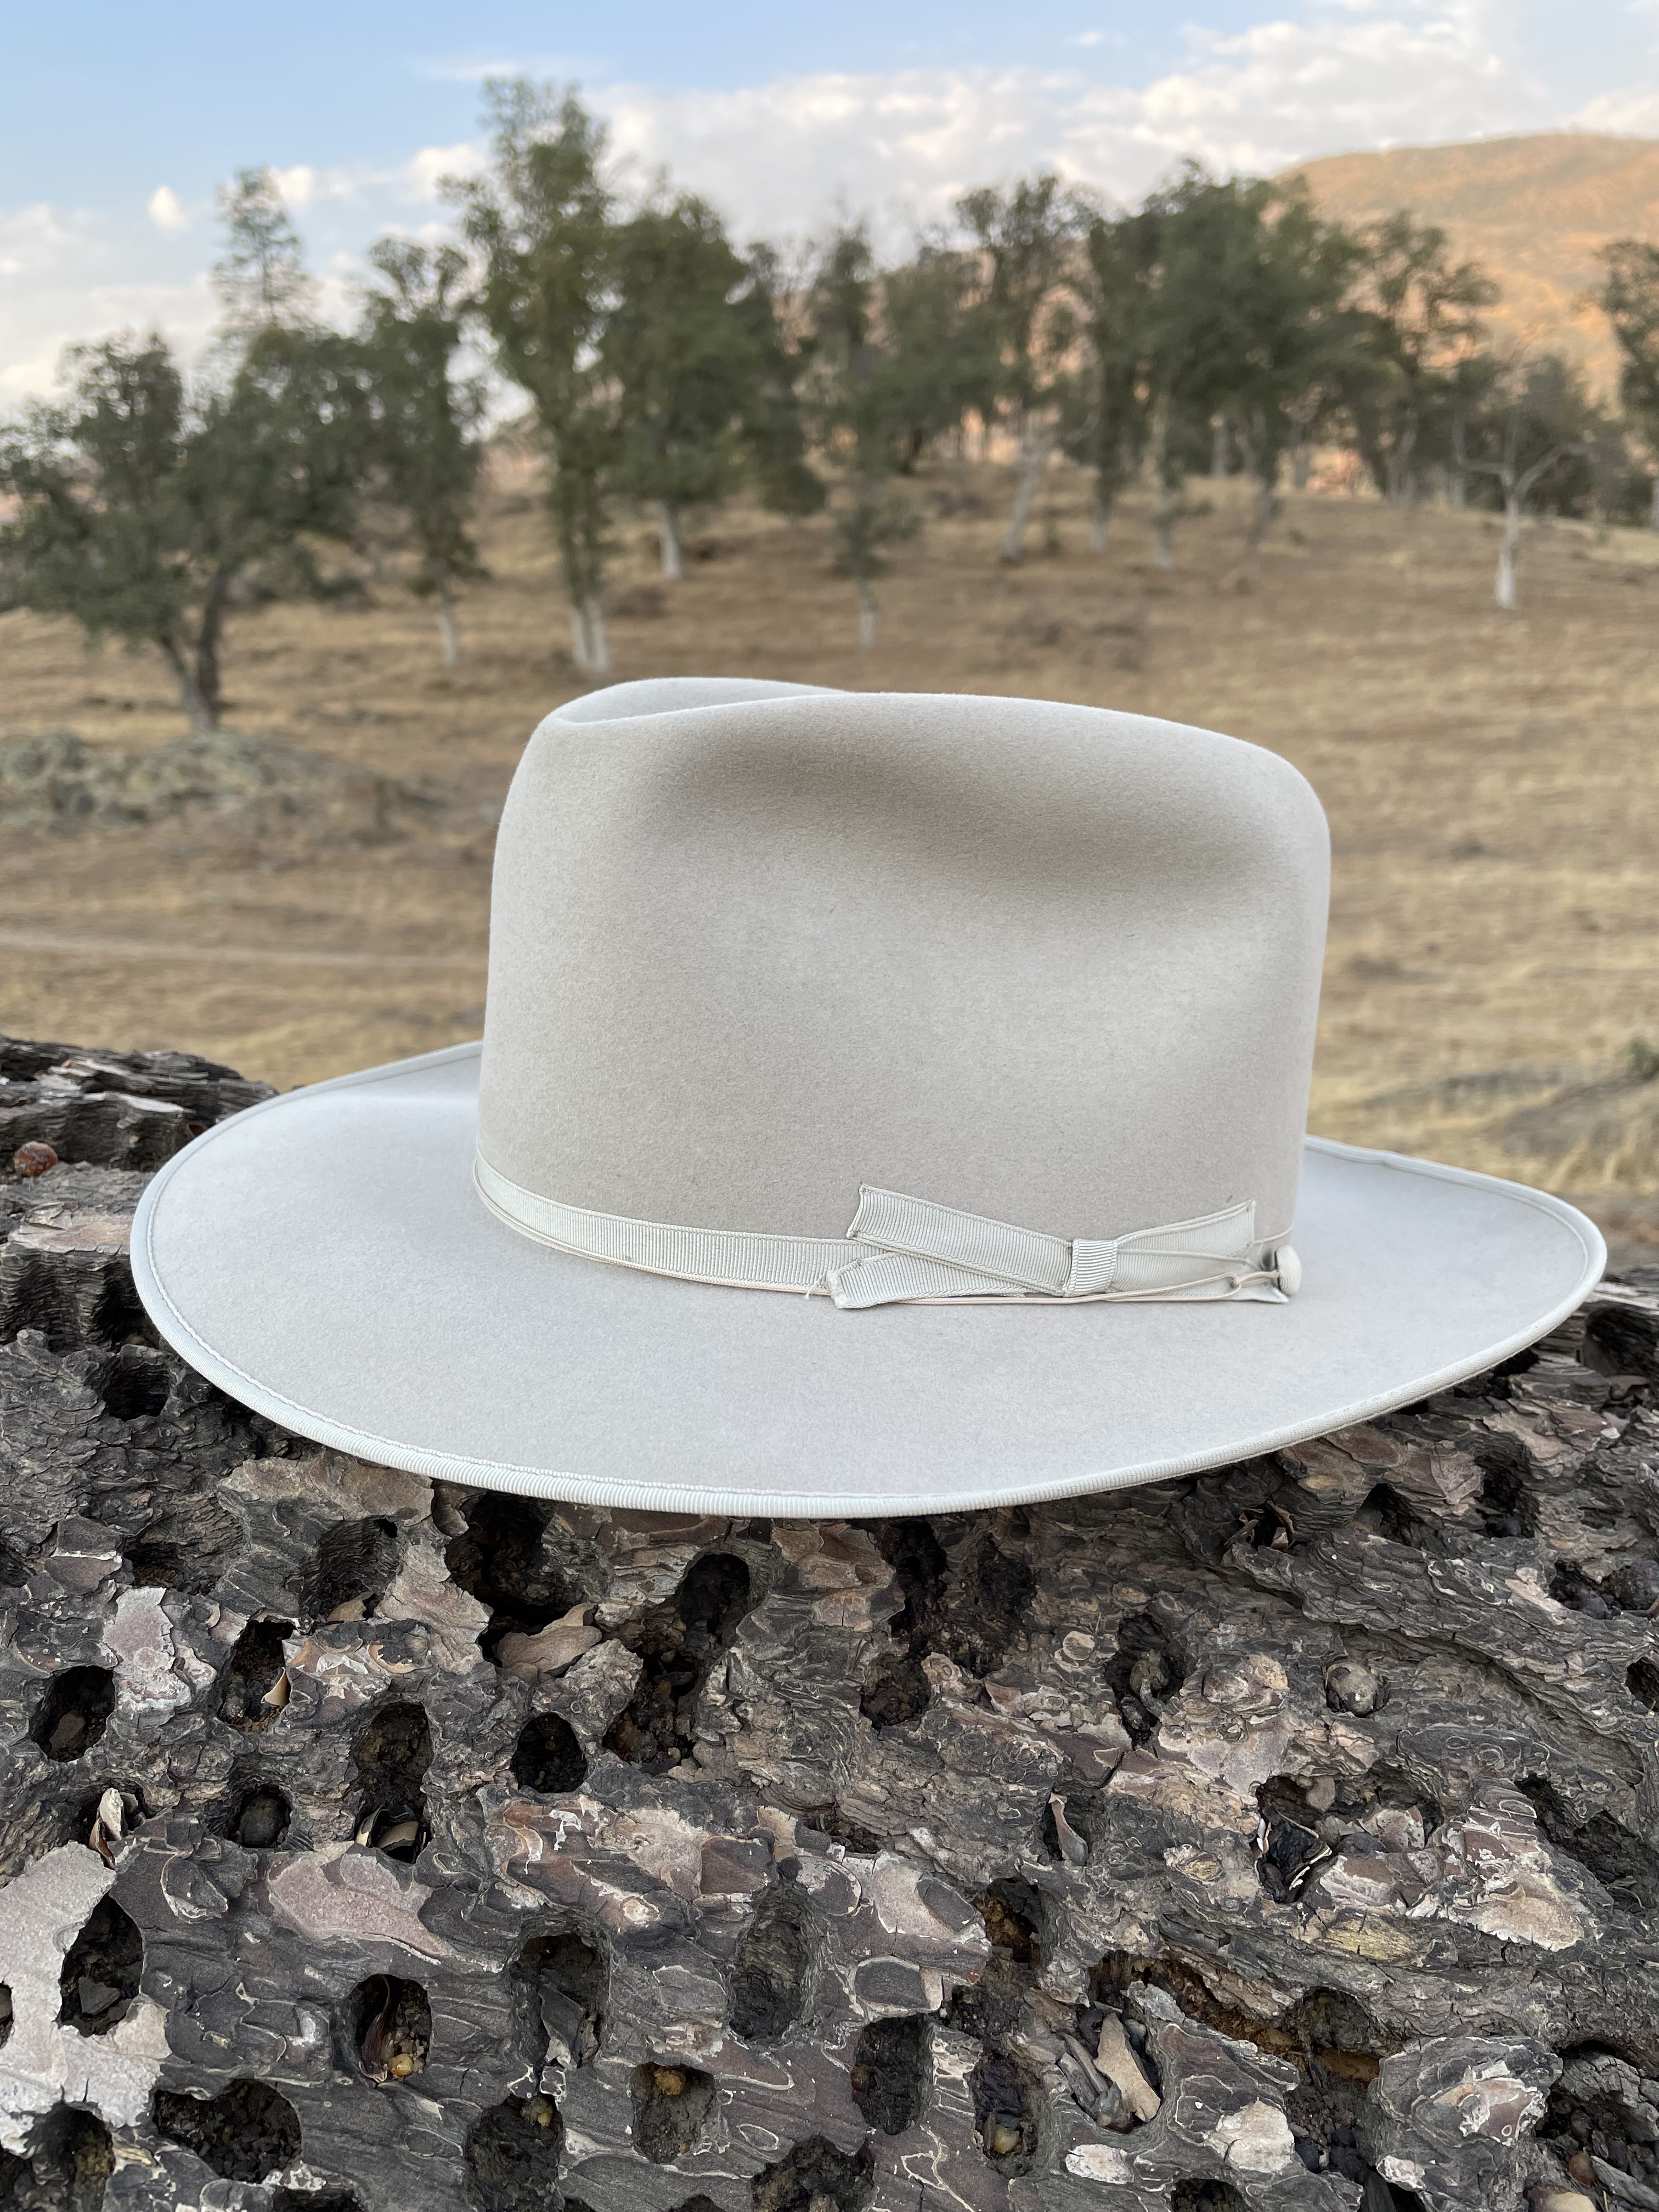 Stetson 6X Open Road Silverbelly Felt Cowboy Hat